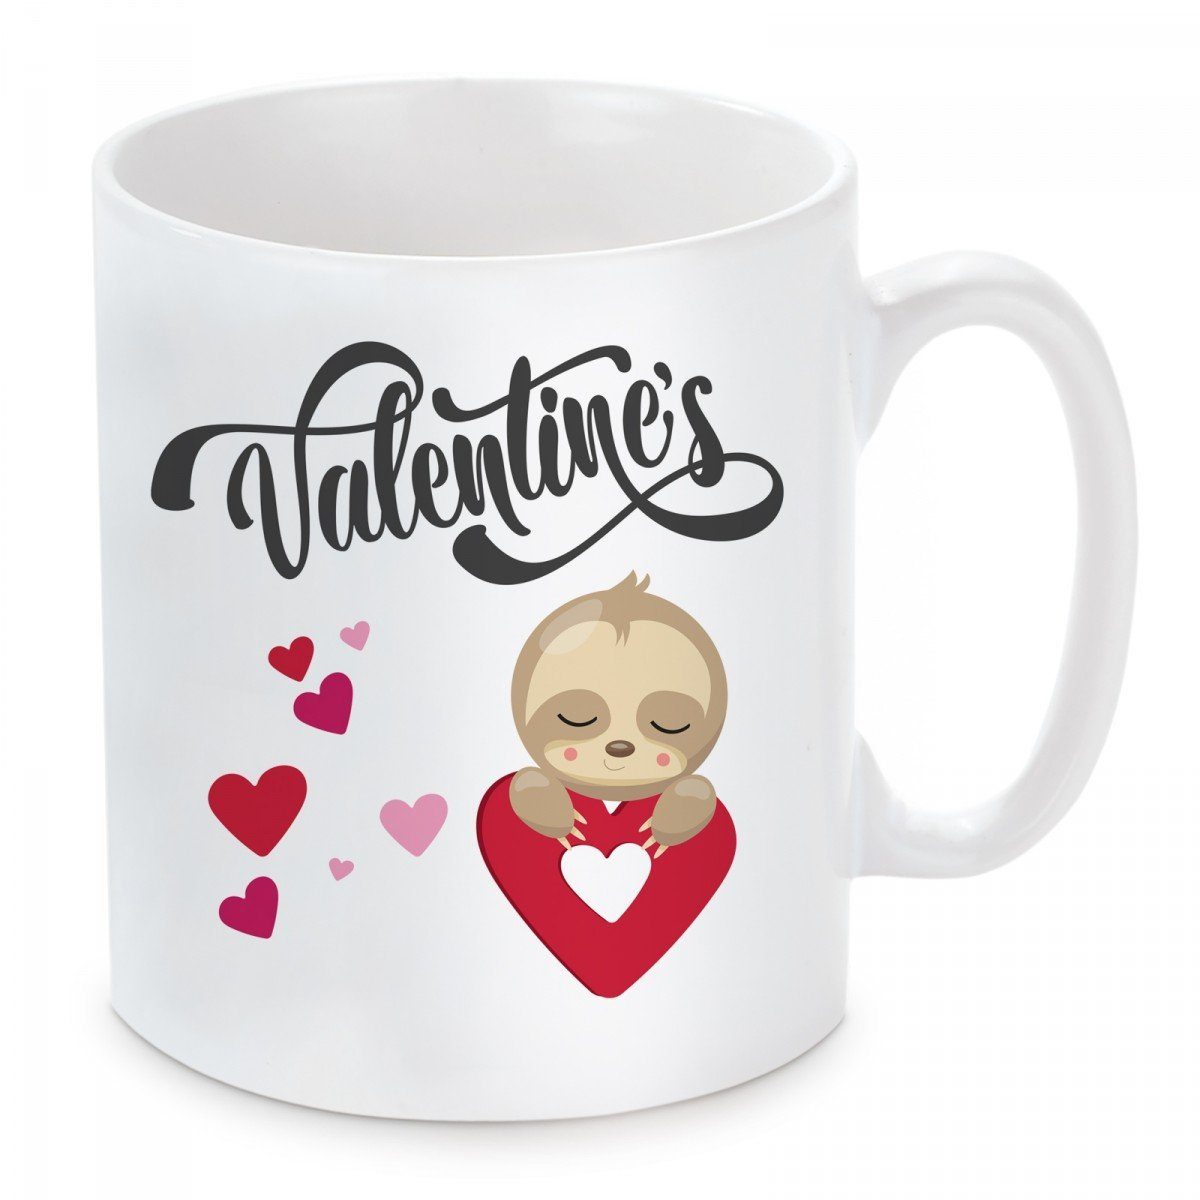 Valentine’s, mit Tasse und Herzbotschaft Keramik, Motiv Kaffeetasse spülmaschinenfest mikrowellengeeignet Kaffeebecher